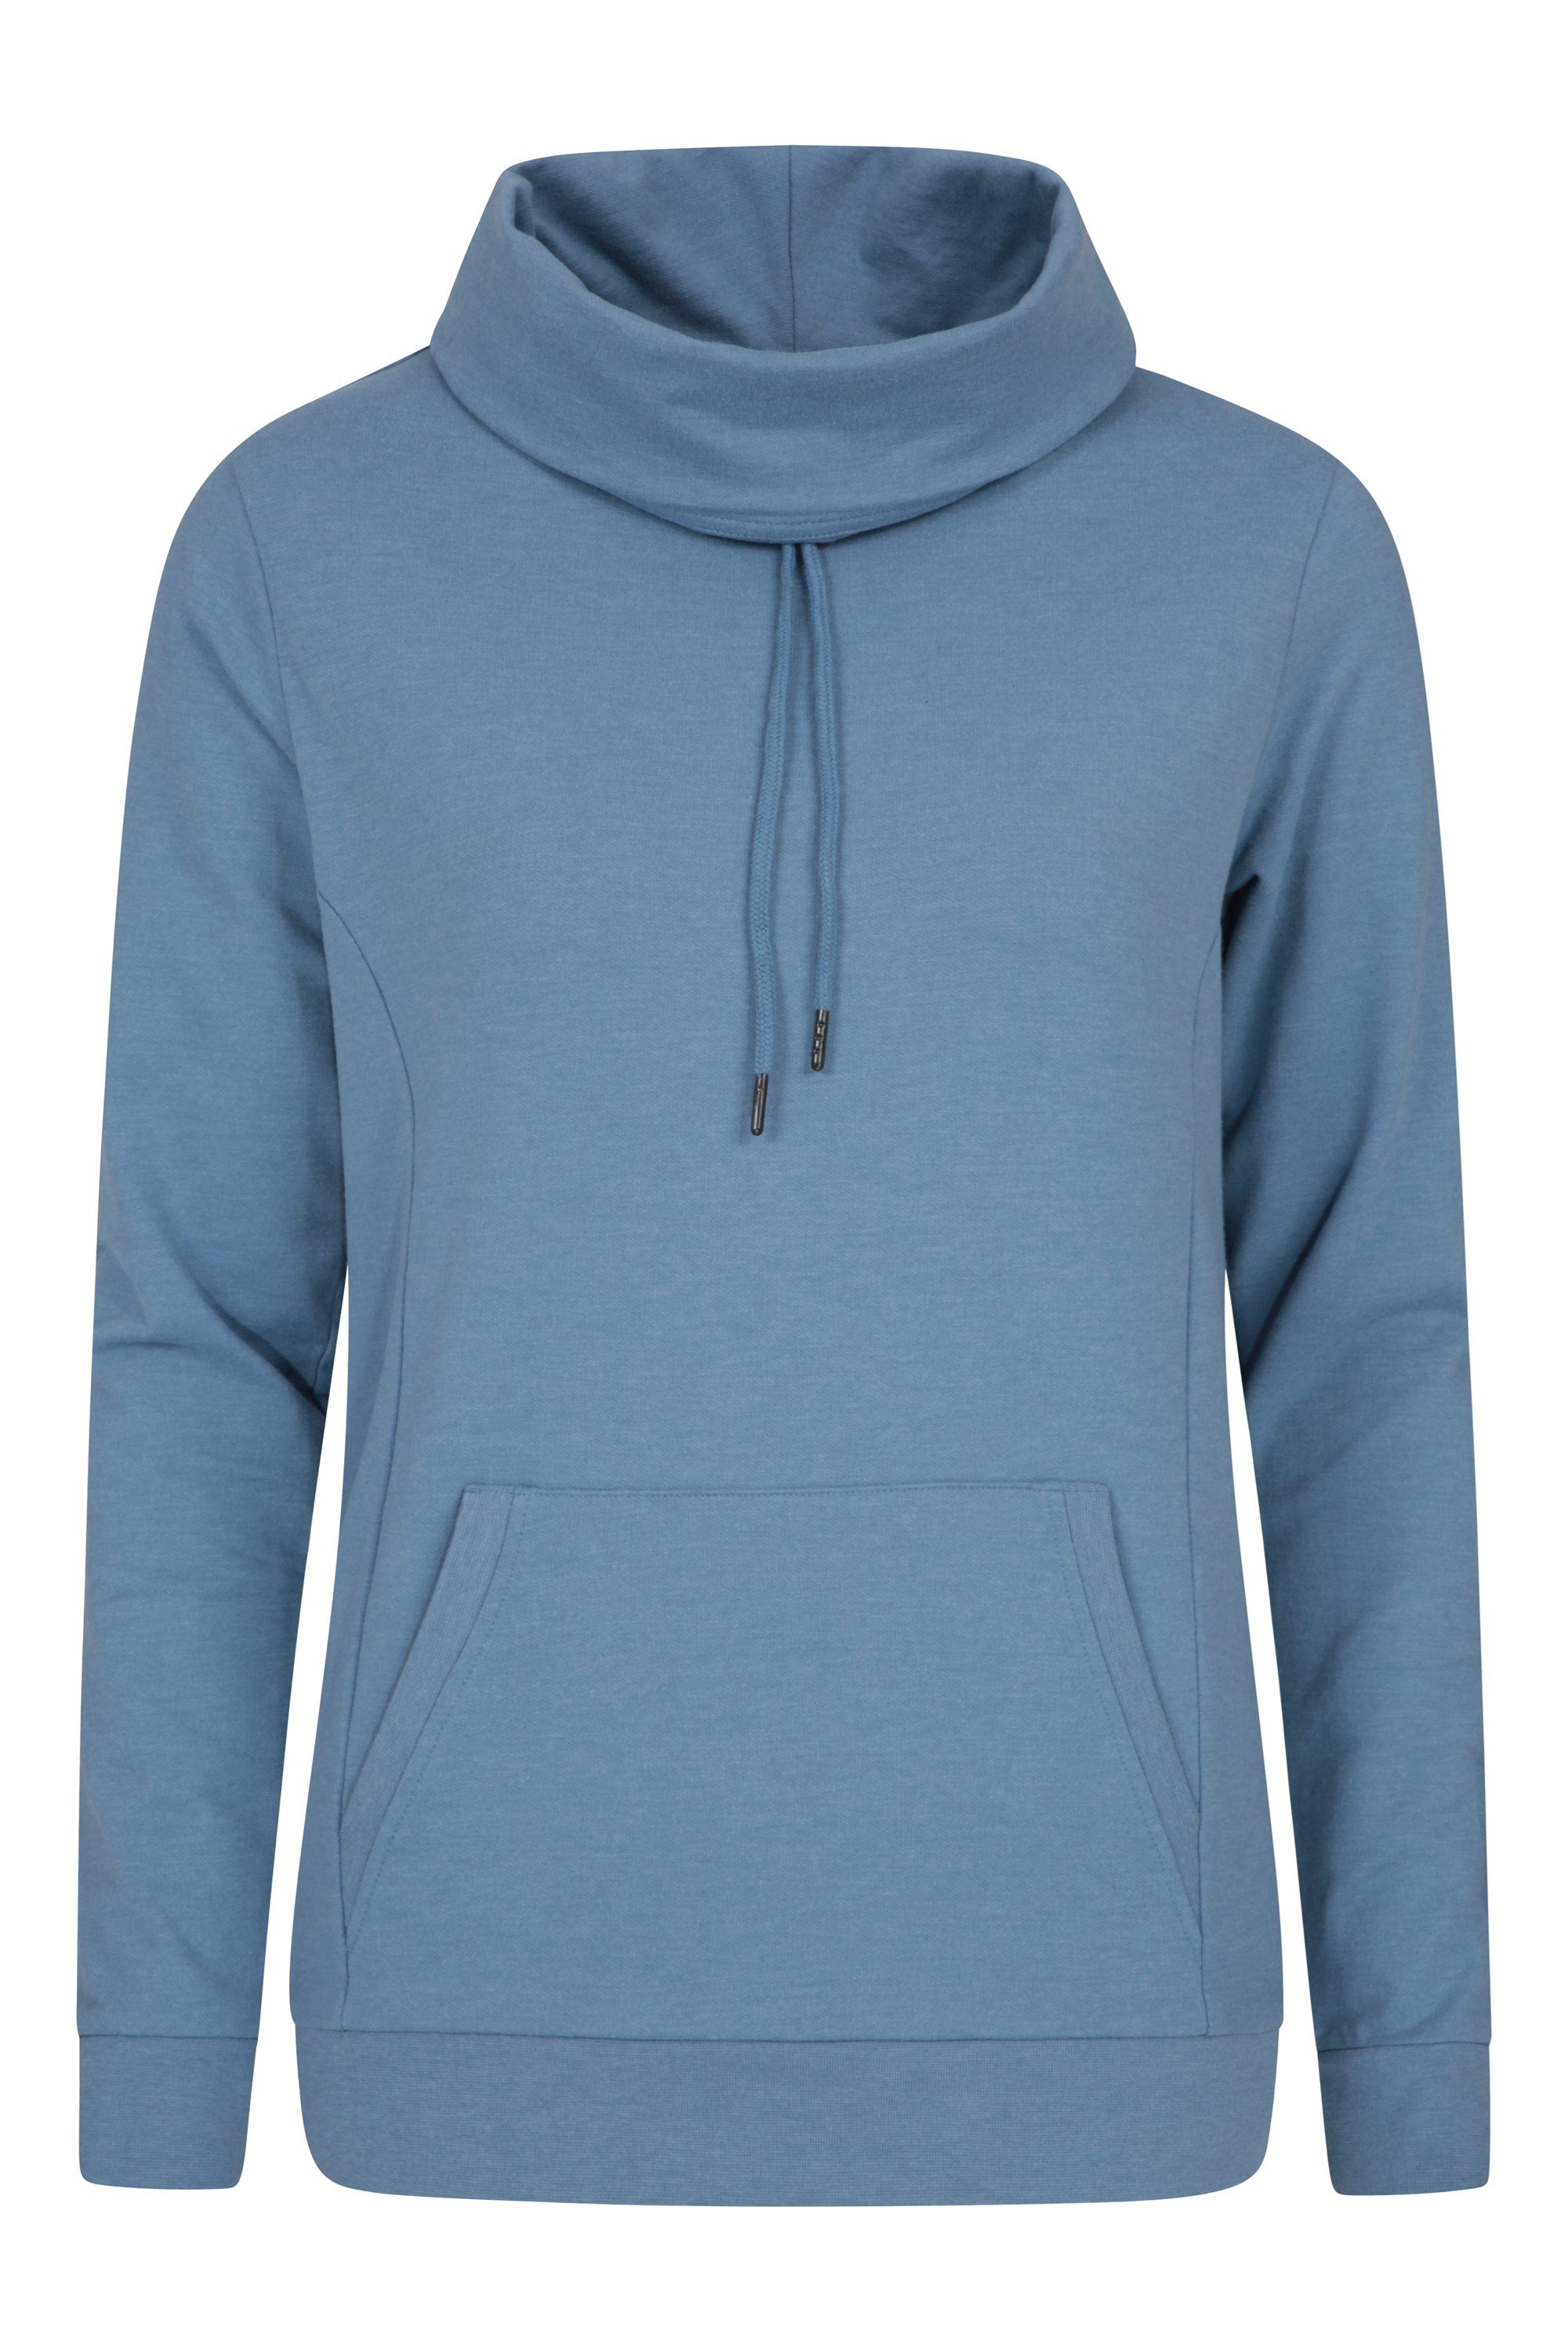 Alder Womens Cowl Neck Sweatshirt - Blue